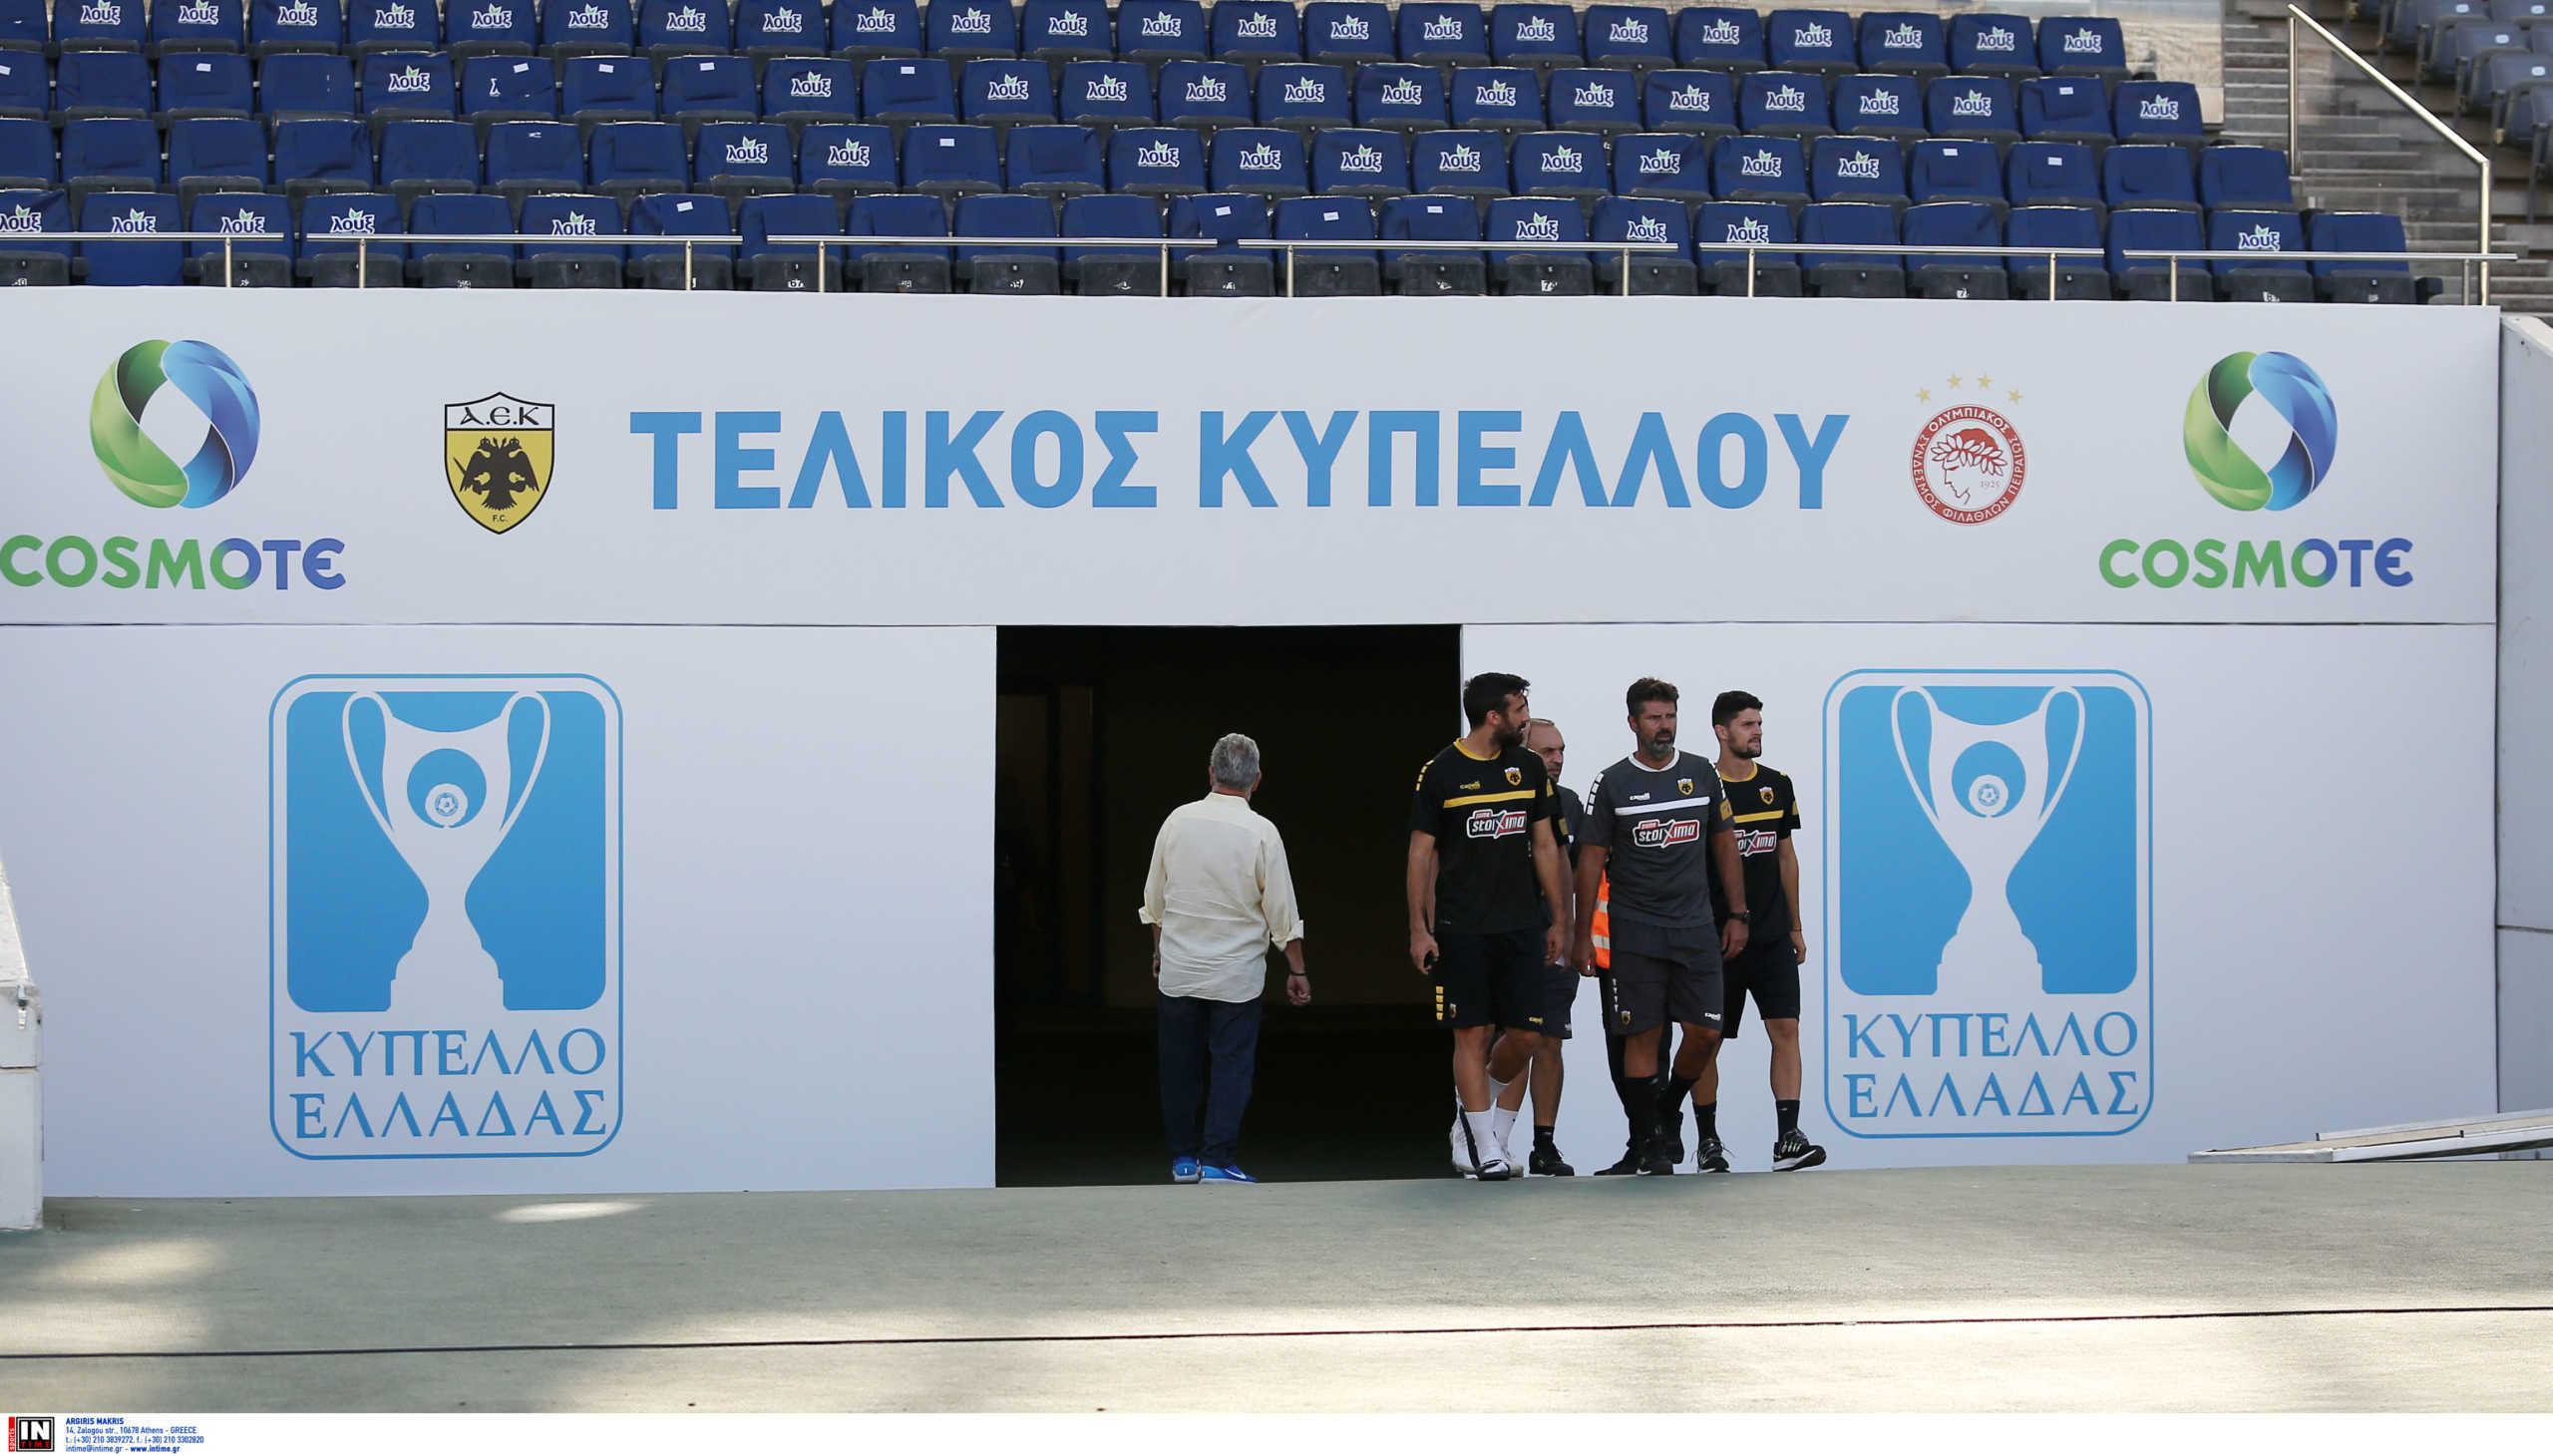 Τελικός Κυπέλλου Ελλάδας: Χωρίς μια 20άδα βασικούς Ολυμπιακός και ΑΕΚ!